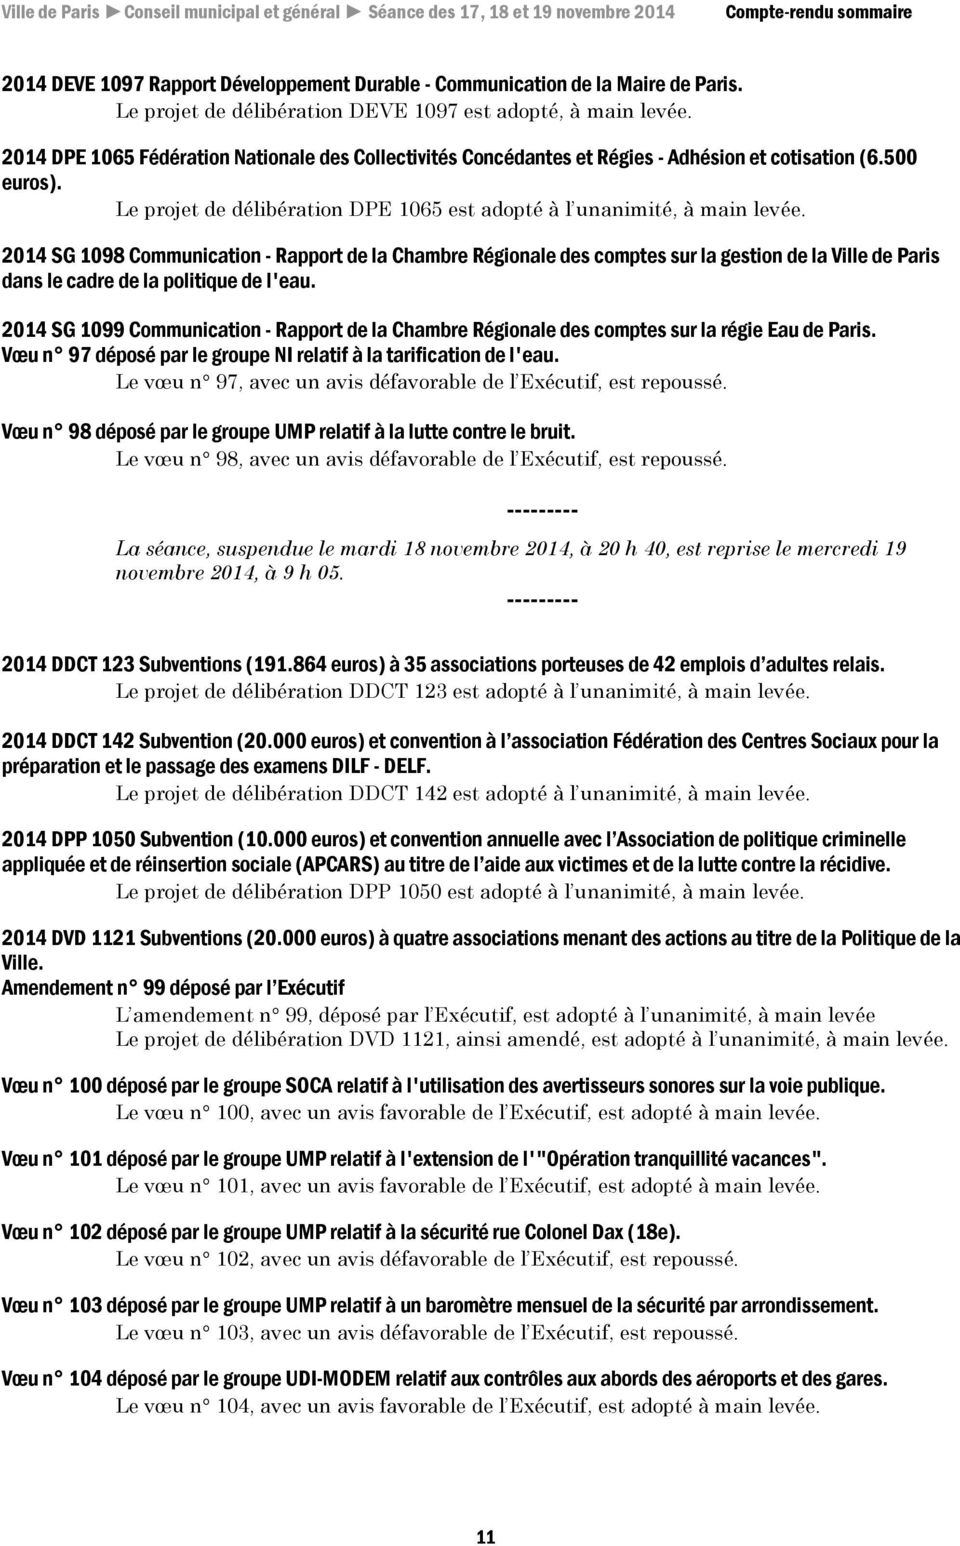 2014 SG 1098 Communication - Rapport de la Chambre Régionale des comptes sur la gestion de la Ville de Paris dans le cadre de la politique de l'eau.